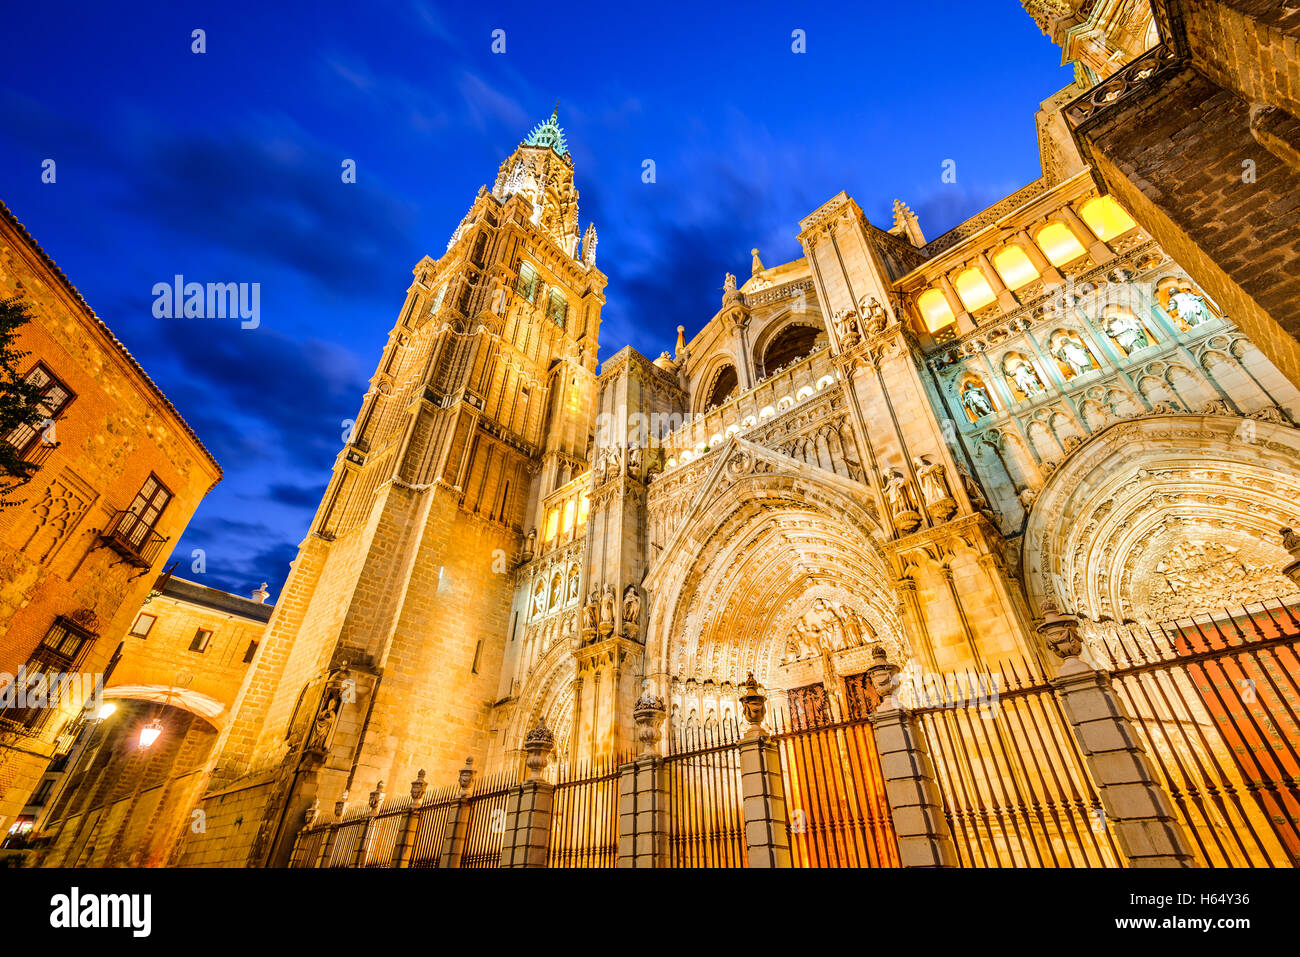 Toledo, Espagne. Catedral Primada Santa Maria de Toledo, construite en style gothique mudéjar (1226). Castilla la Mancha. Banque D'Images